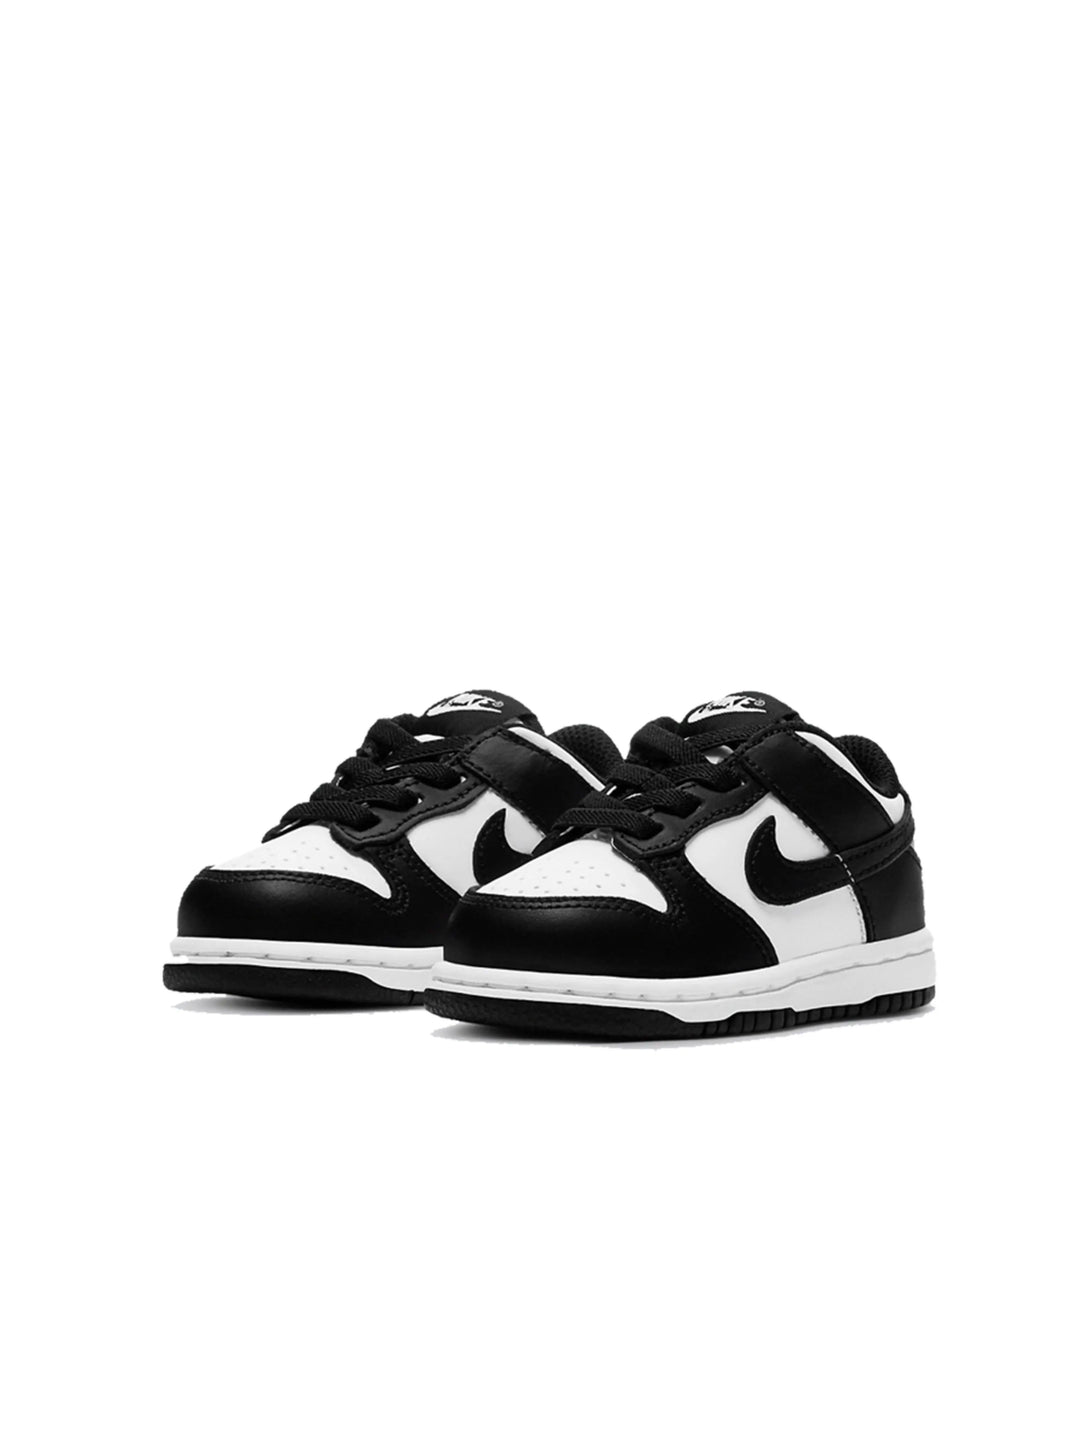 Nike Dunk Low Retro White Black (TD) Prior